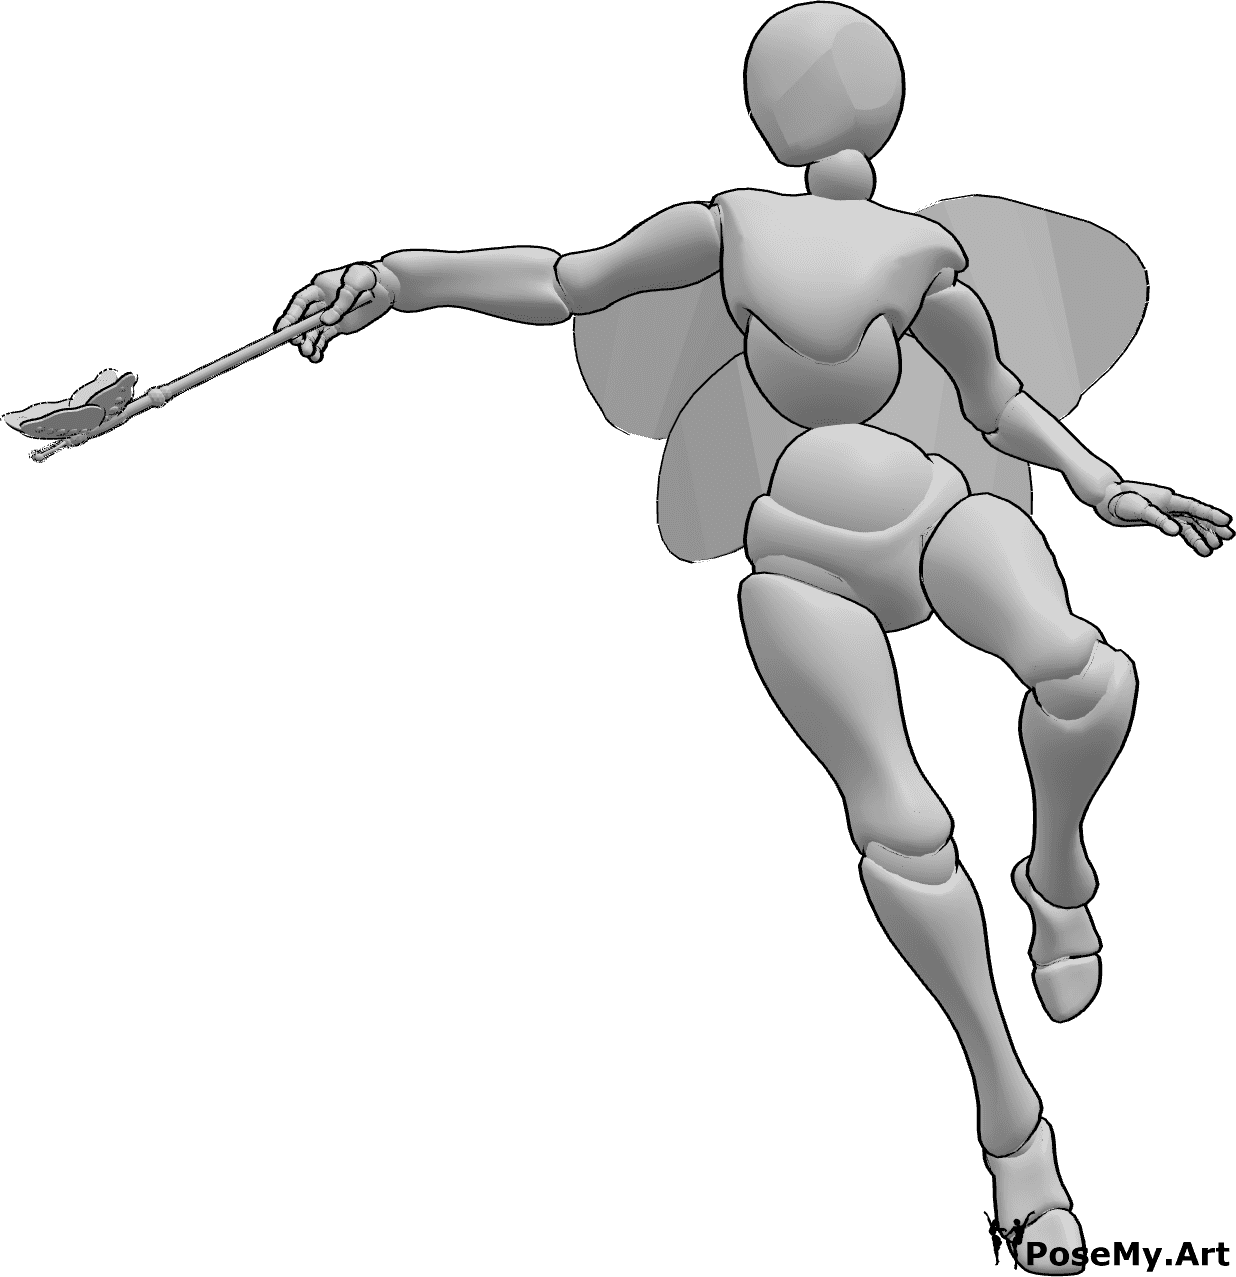 Riferimento alle pose- Posa magica da fata - Una fata femmina vola e lancia un incantesimo con la sua bacchetta fatata nella mano destra.